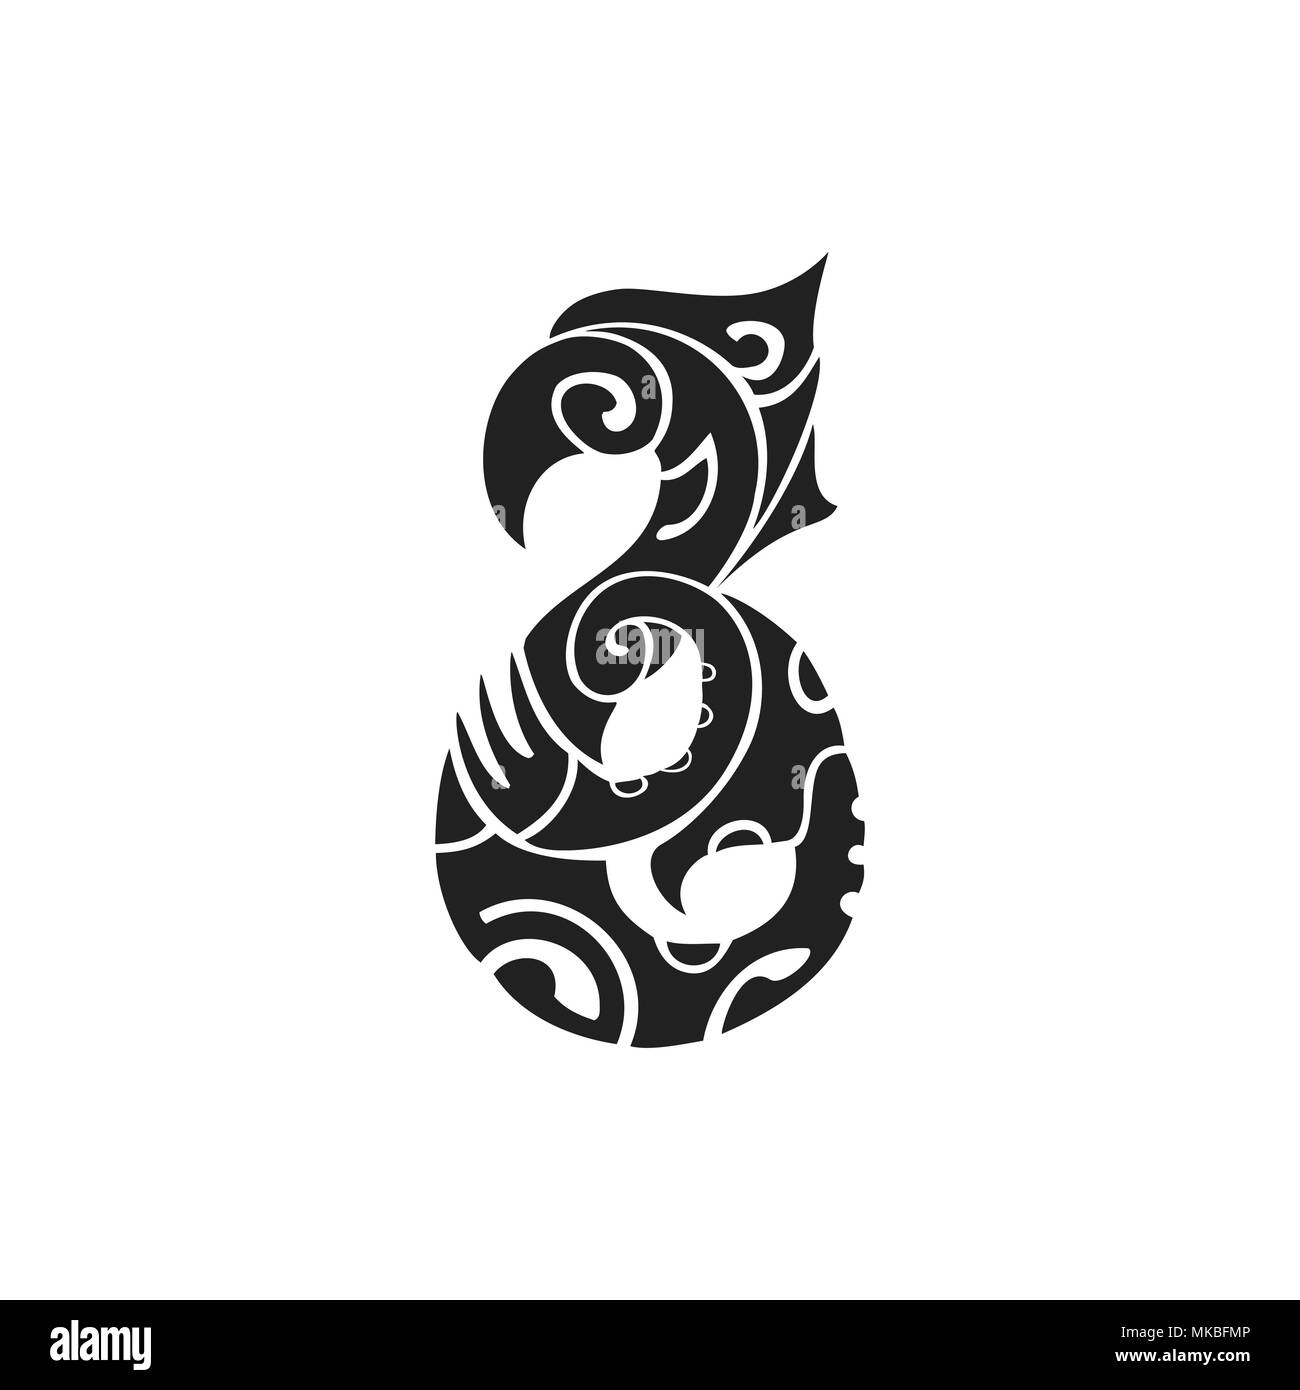 Vecteur d'encre monochrome noir dessinés à la main, symbole de l'art folklorique polynésienne autochtone créature mythologique Manaia illustration isolé sur fond blanc Illustration de Vecteur